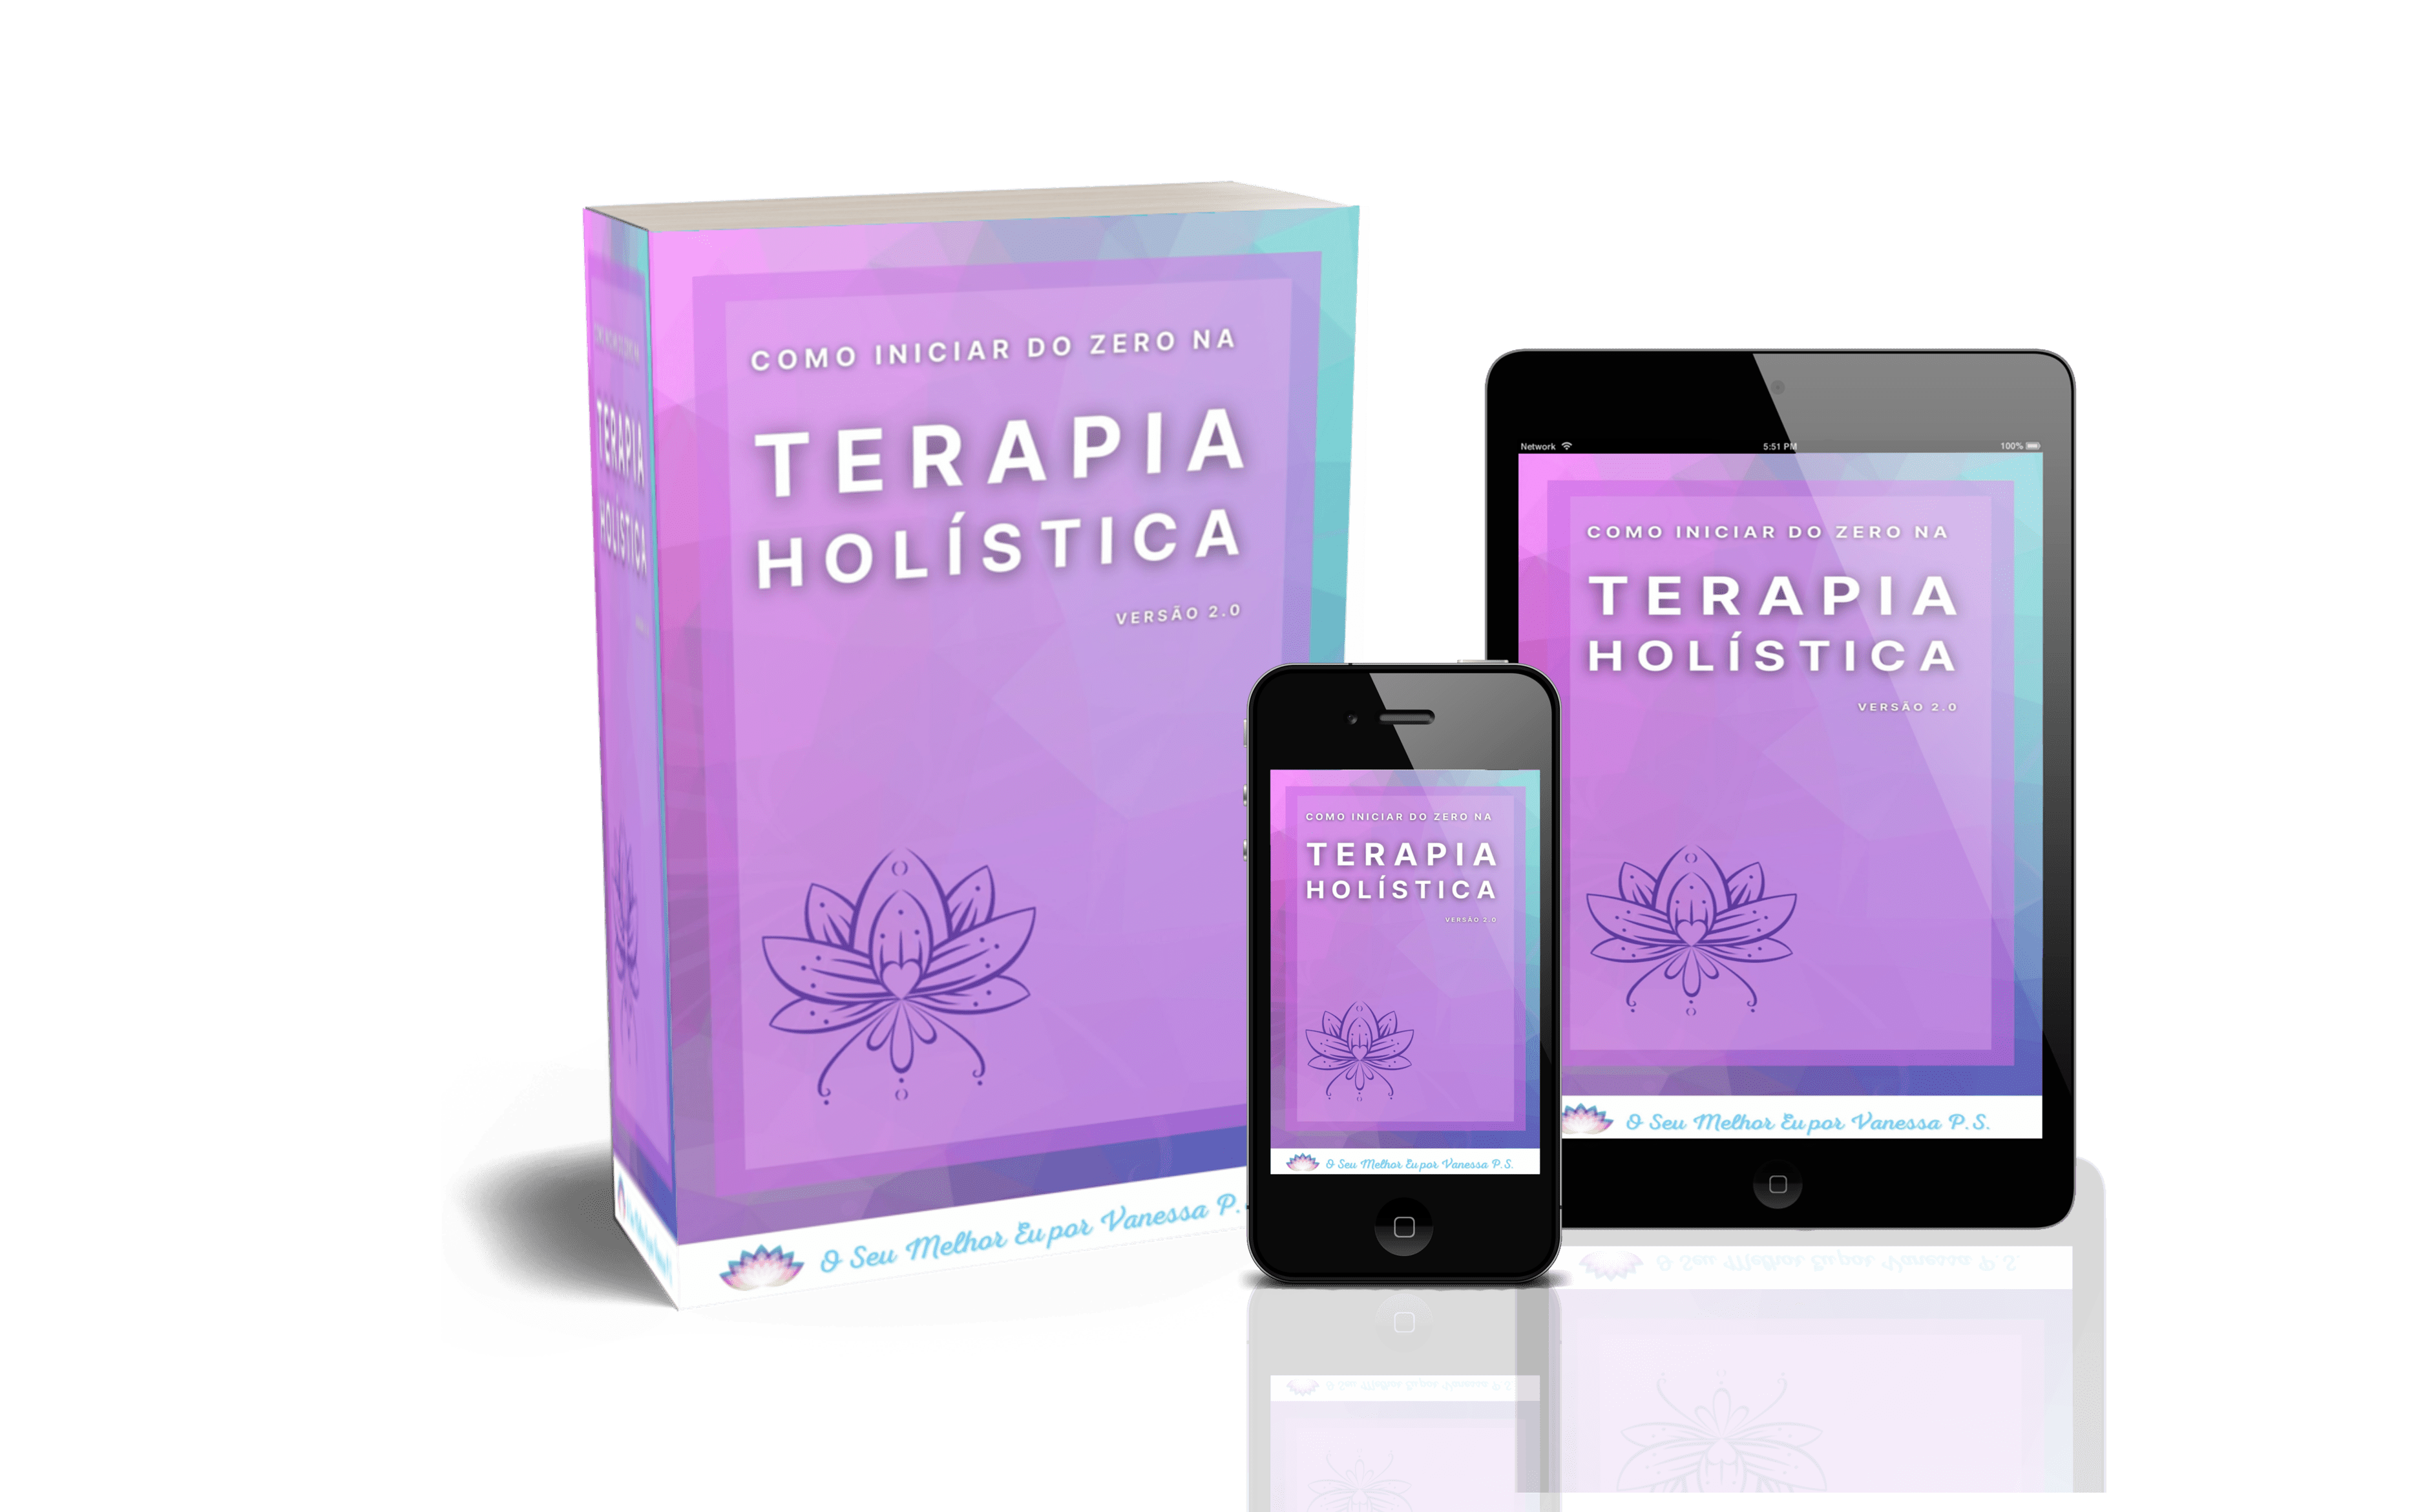 Uppo] Sessão de Terapia Holística Online por R$ 59,90 • Guia da Alma